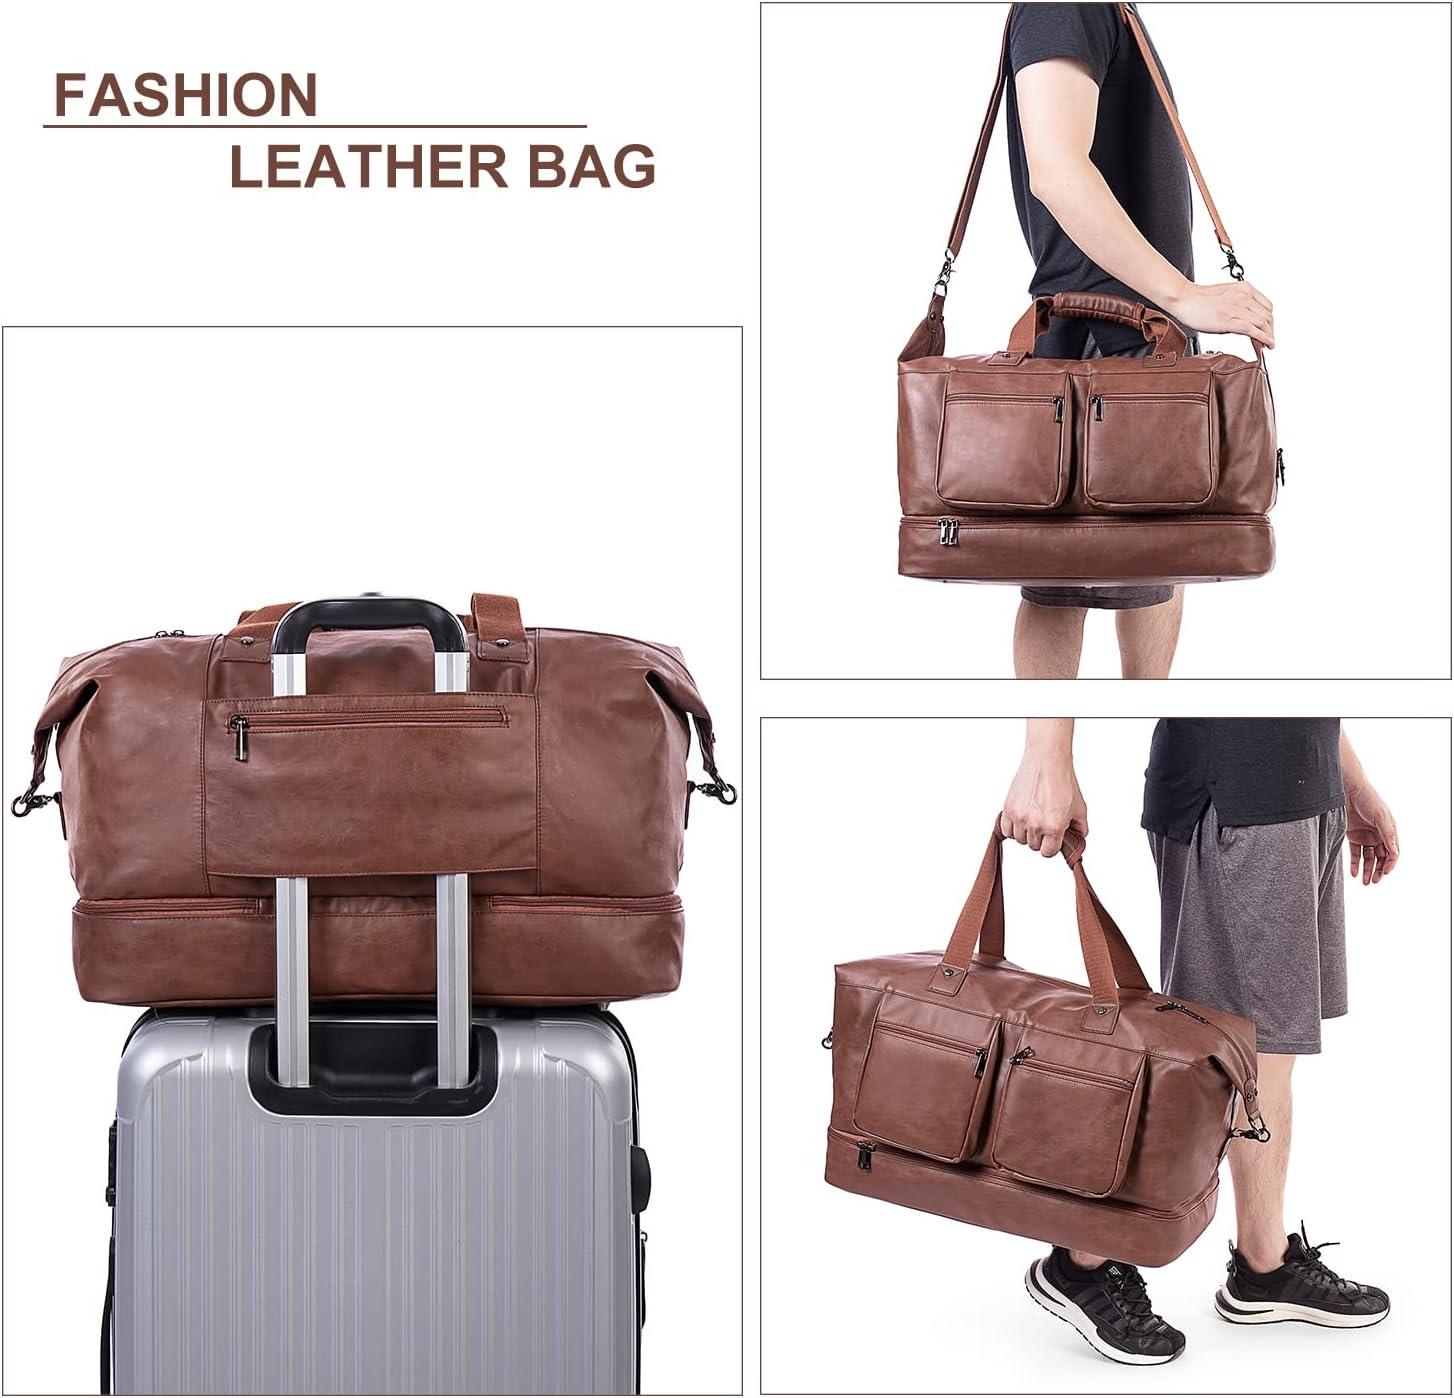 FR Fashion Co. 21" Men's Leather Overnight Duffel Bag - FR Fashion Co. 